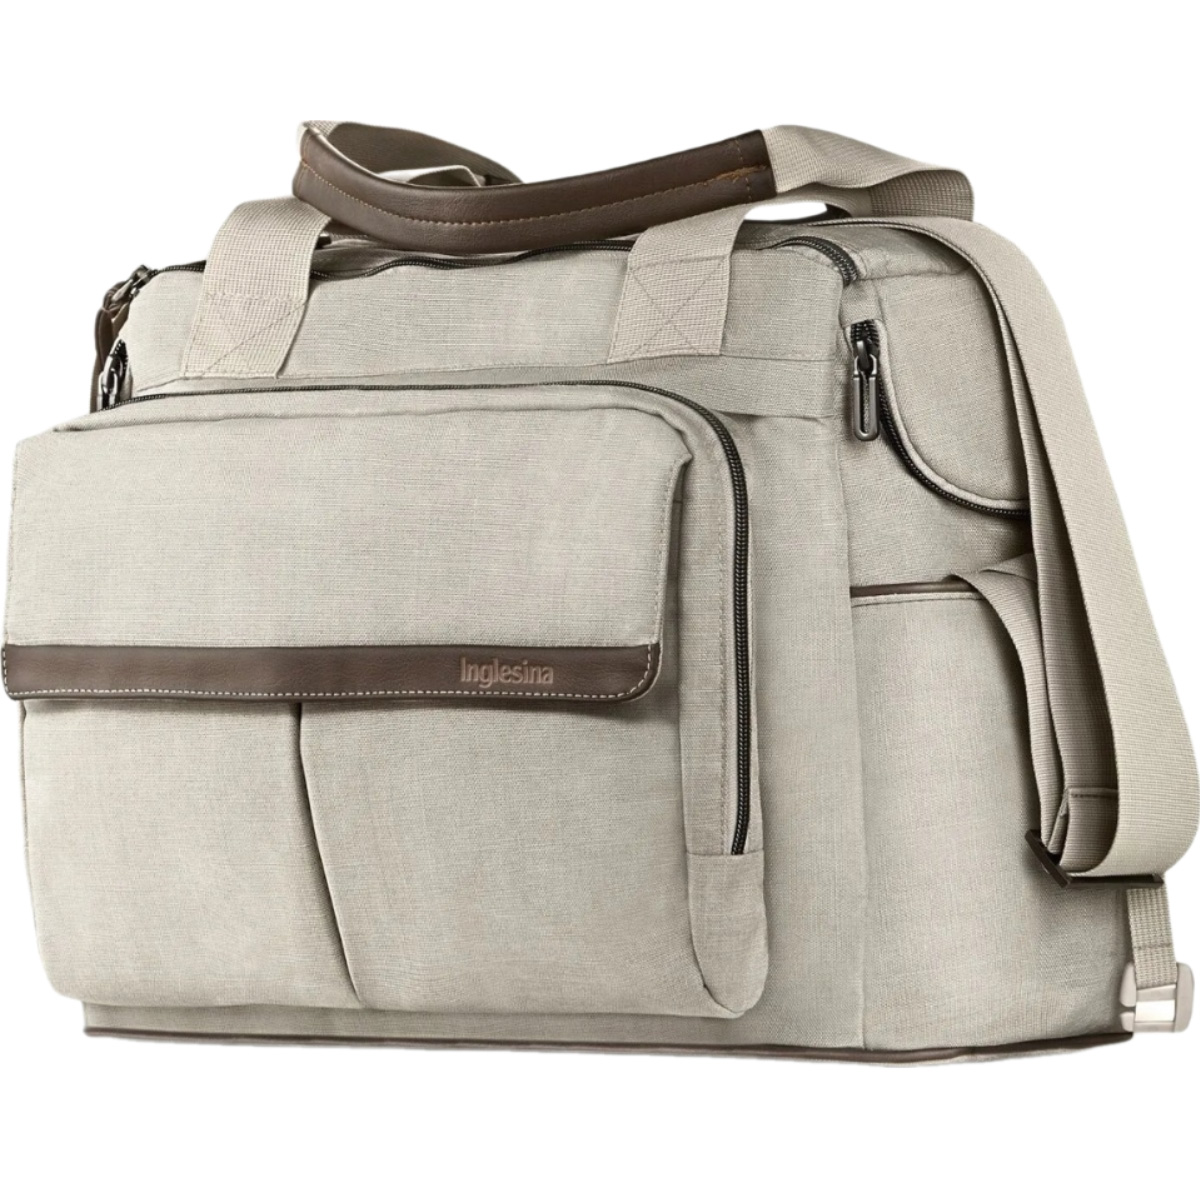 Сумка до коляски Inglesina Aptica Dual Bag Cashmere Beige (73588) - фото 1